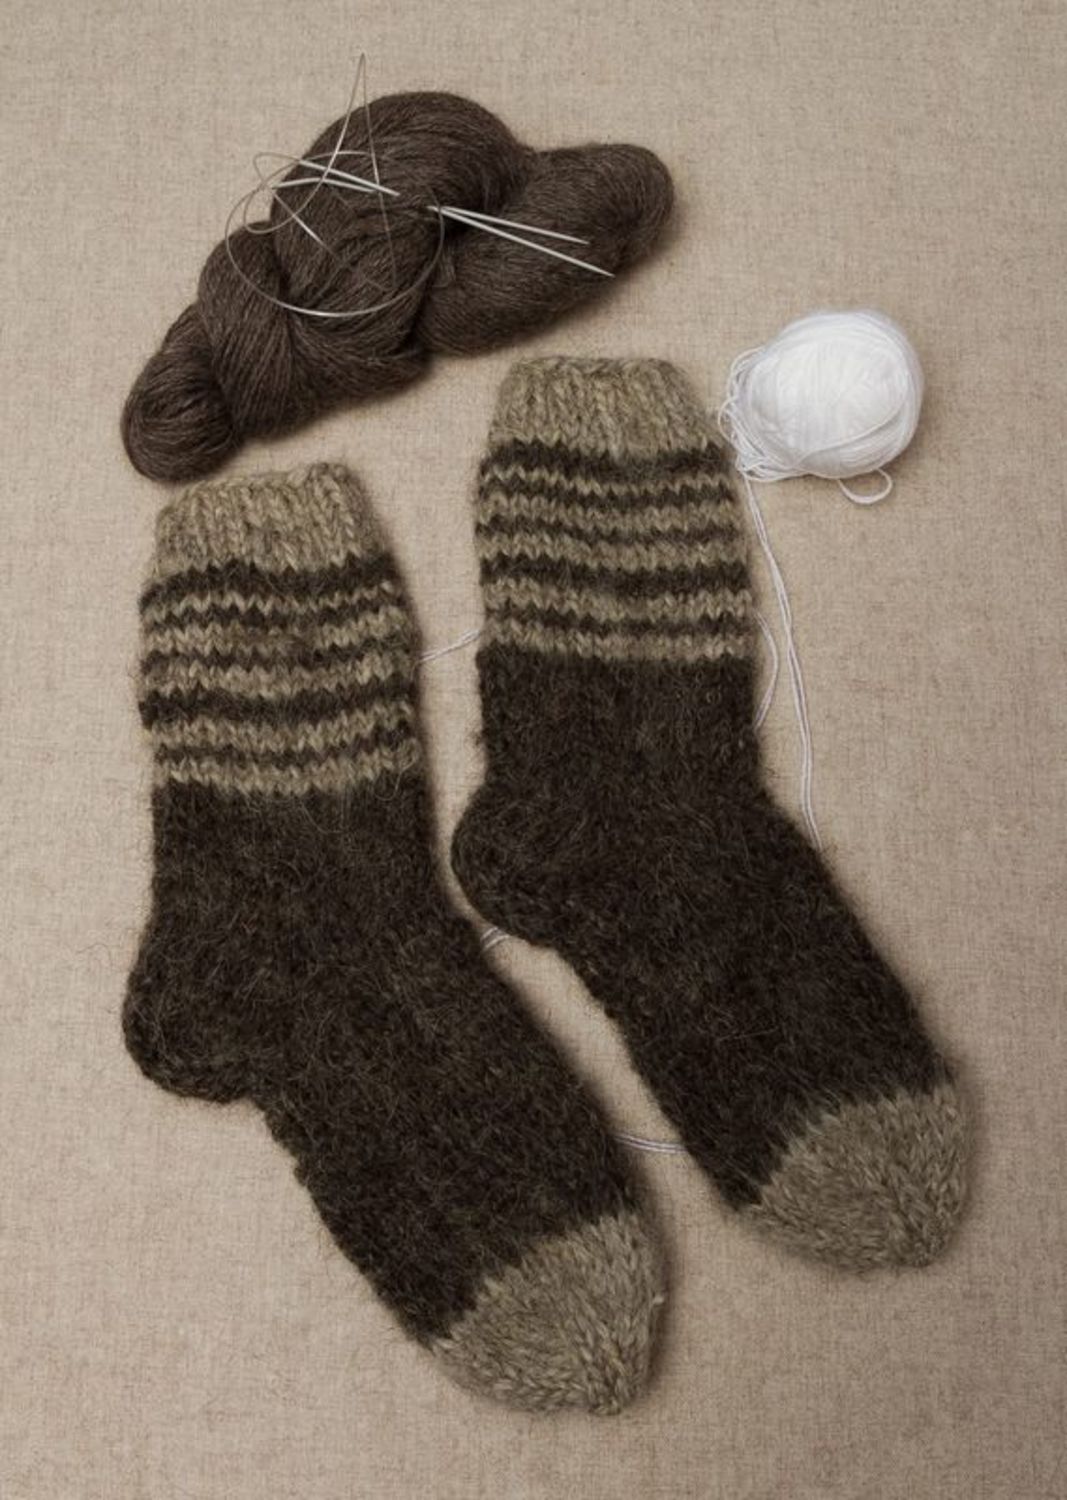 Мужские носки связанные вручную фото 1